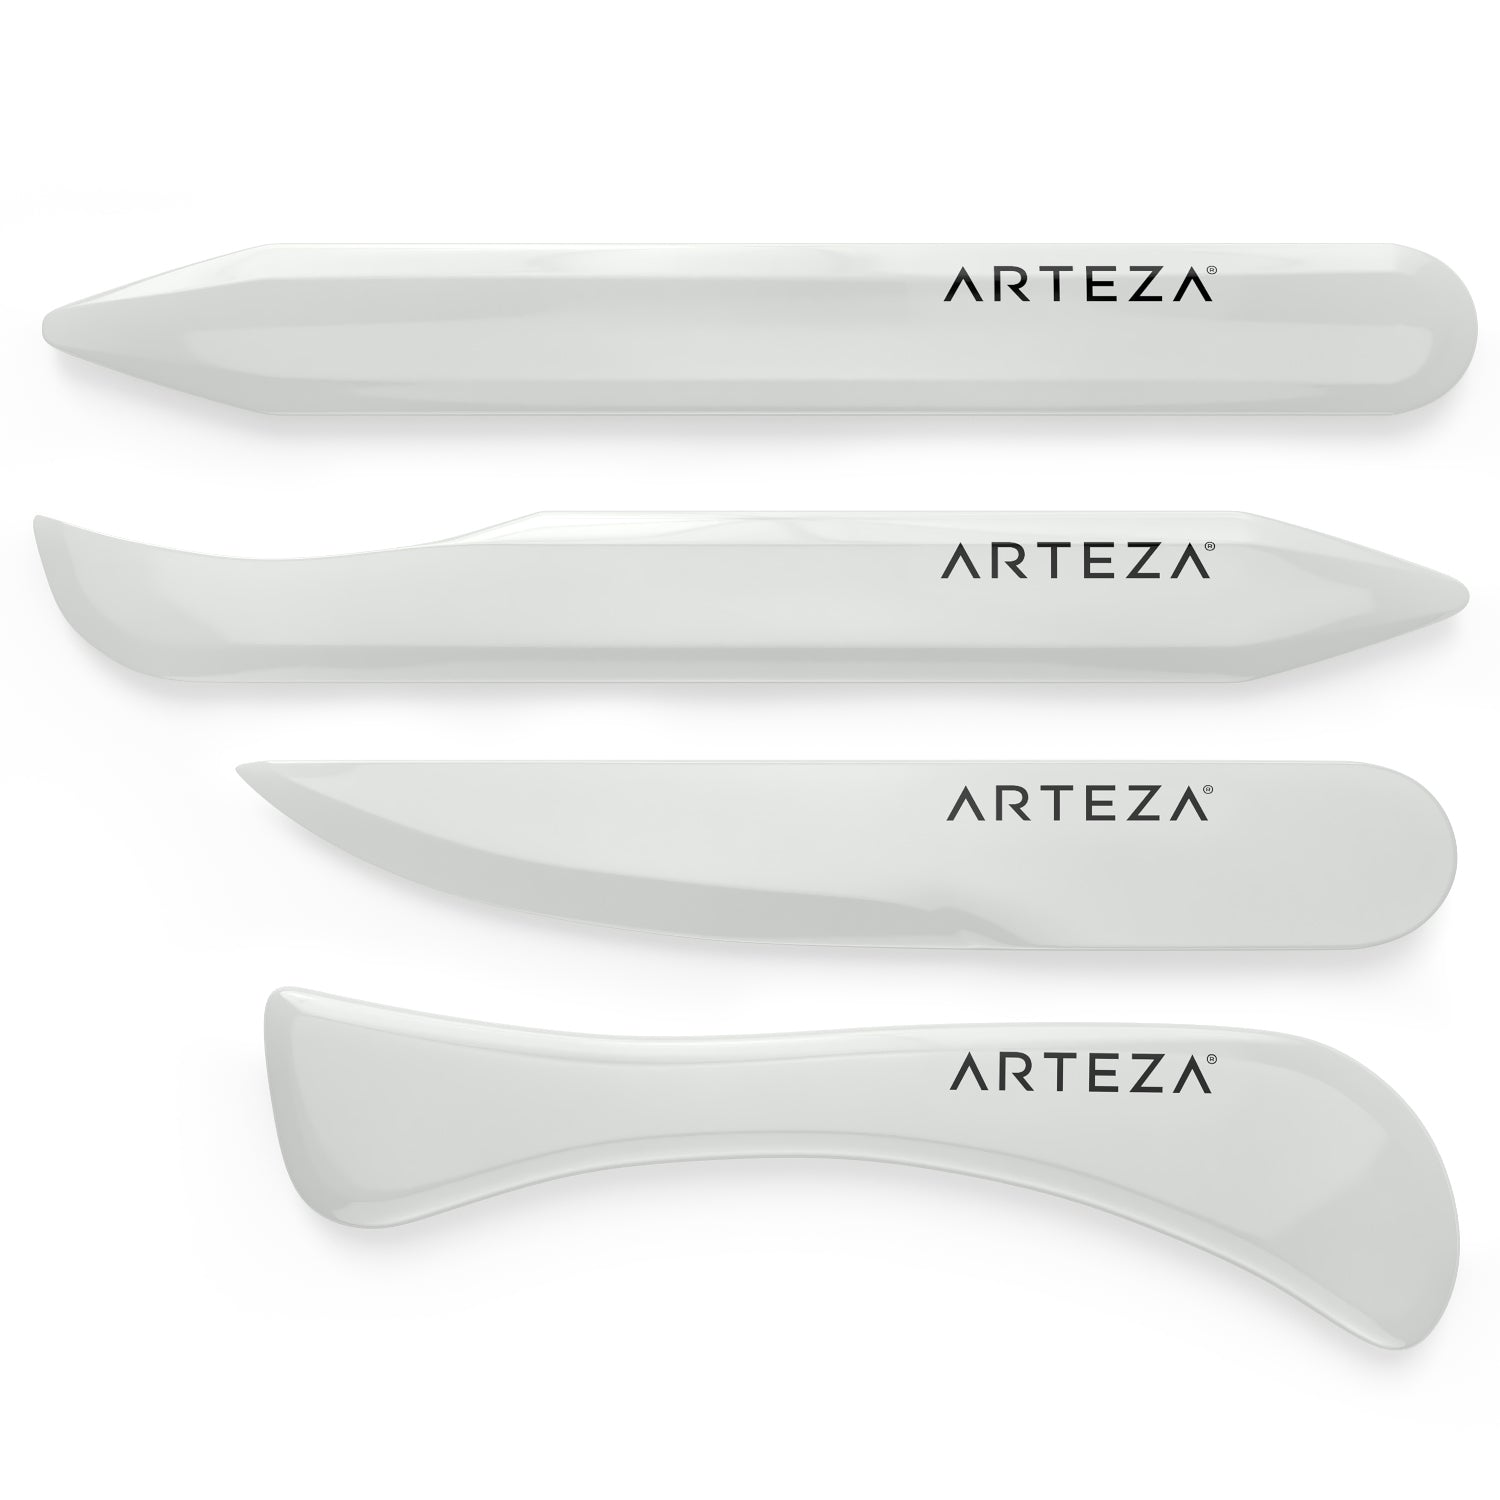 Arteza Bone Folder (Set of 4)